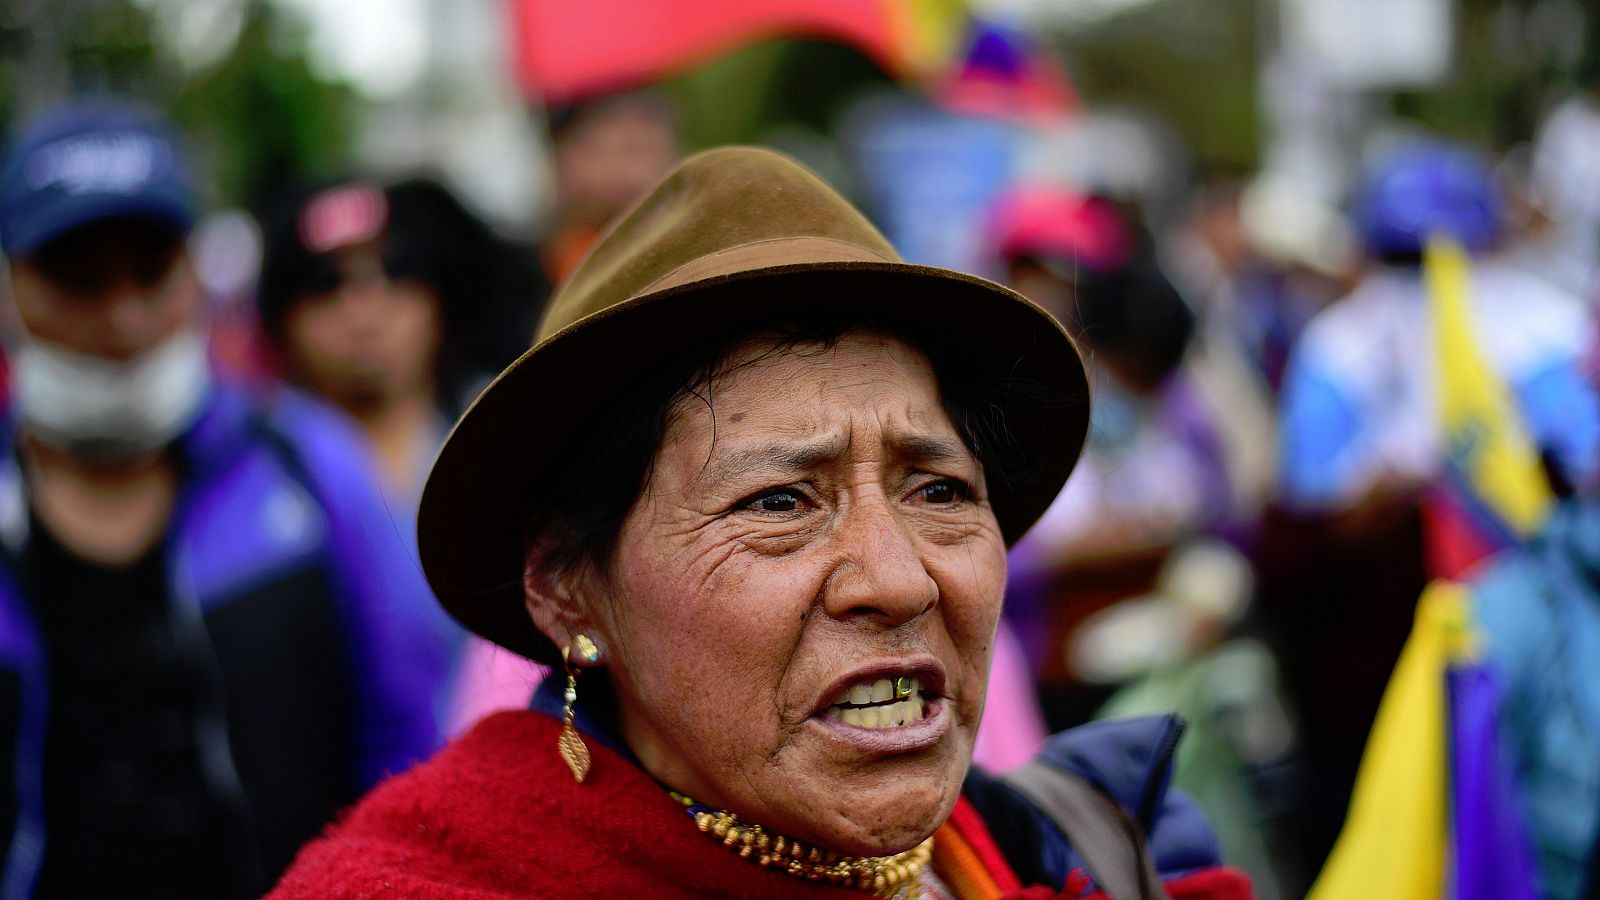 Telediario 1: Sigue aumentando el número de víctimas en los enfrentamientos de Ecuador | RTVE Play